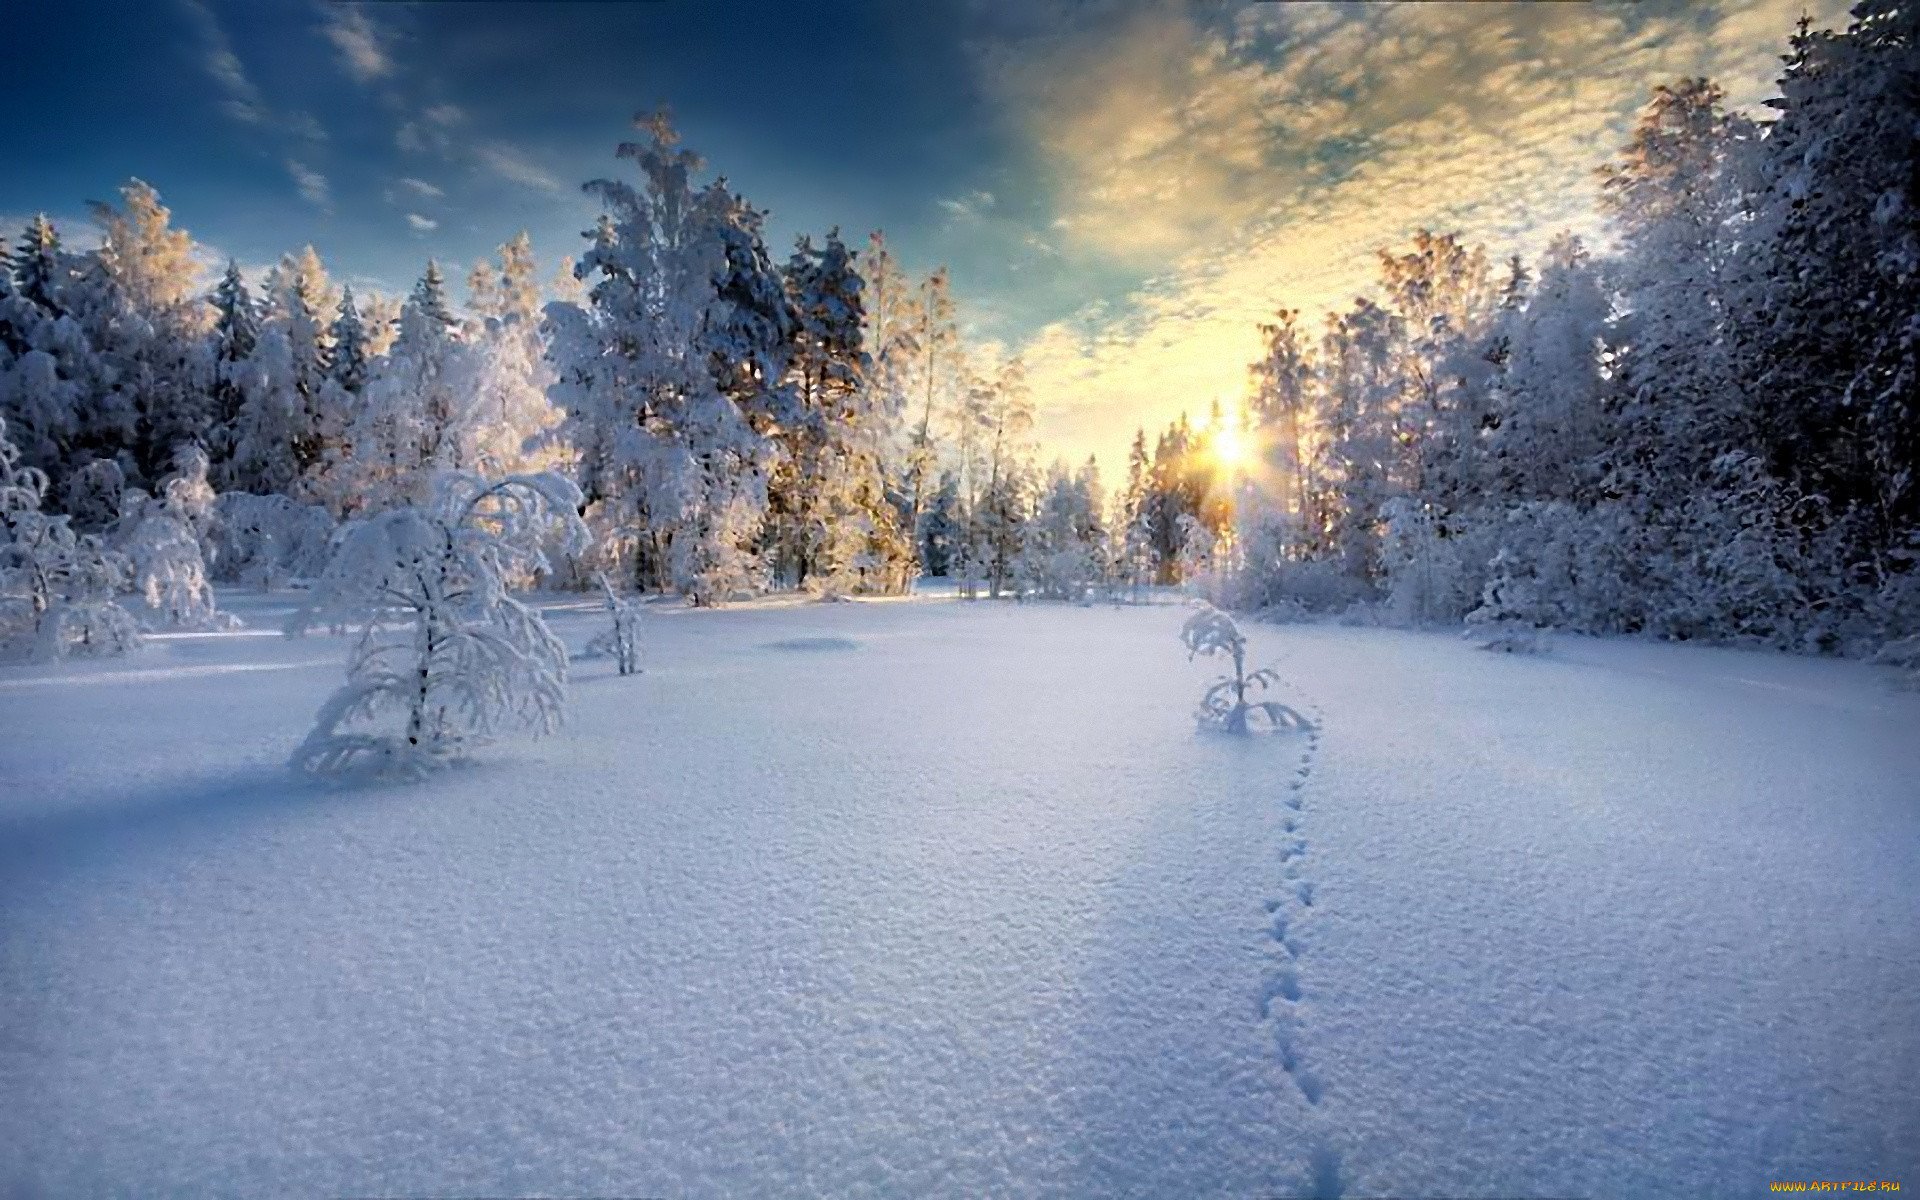 Картинки зима красивые. Красивые снимки зимы. Снежная красота зимы. Шикарные зимние пейзажи. Красивые зимние фотографии.